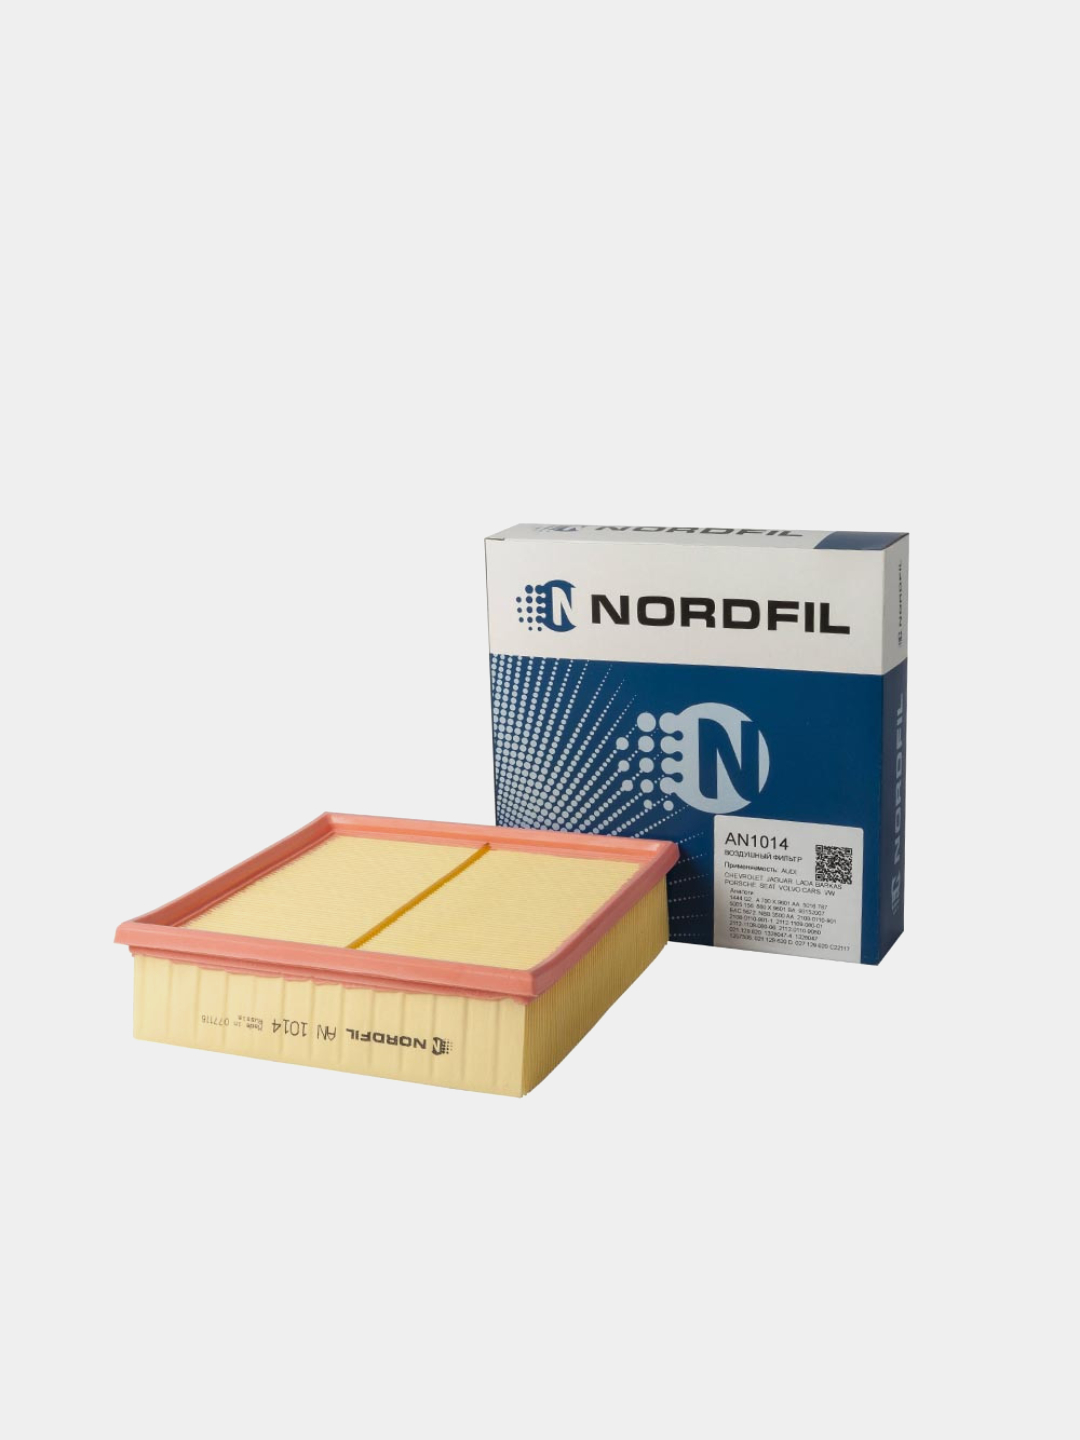 Воздушный фильтр nordfil. Воздушный фильтр ВАЗ нордфил. NORDFIL фильтр 1118 салонный. A1014 воздушный фильтр. Воздушный фильтр ВАЗ 2107 инжектор.